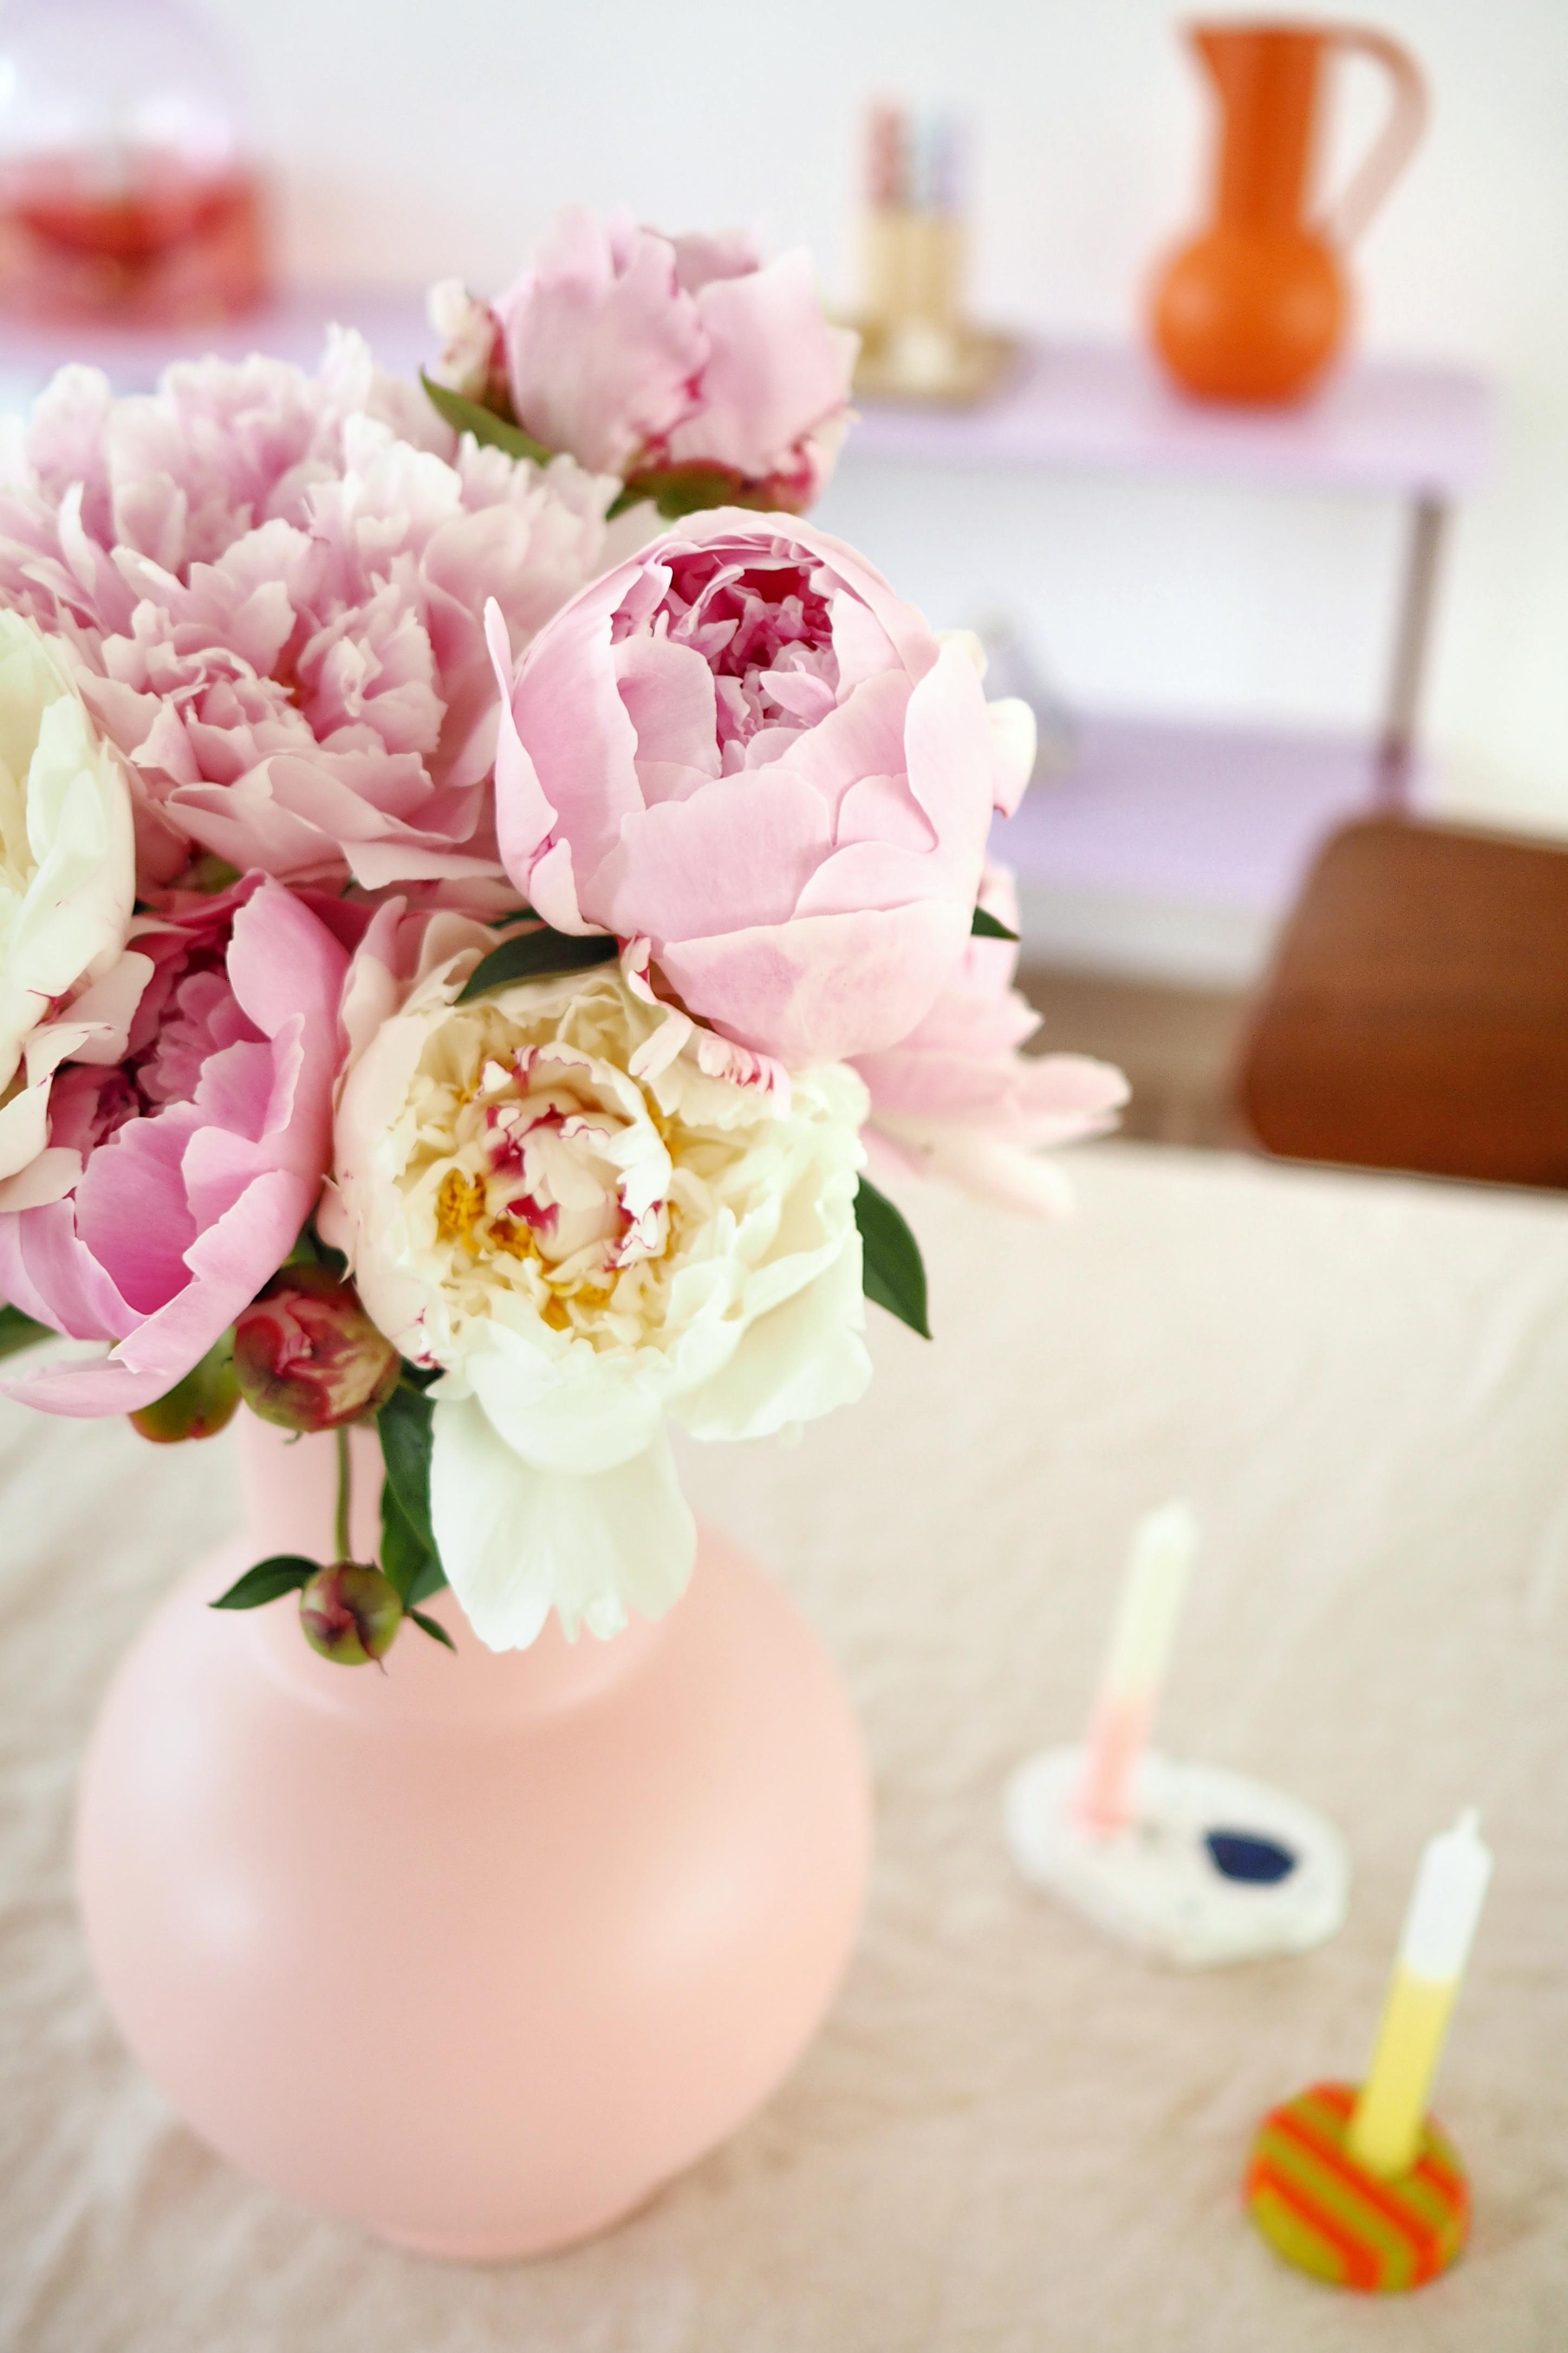 Ganz große Pfingstrosenliebe und der schönsten Vase!
#freshflowers #detailverliebt